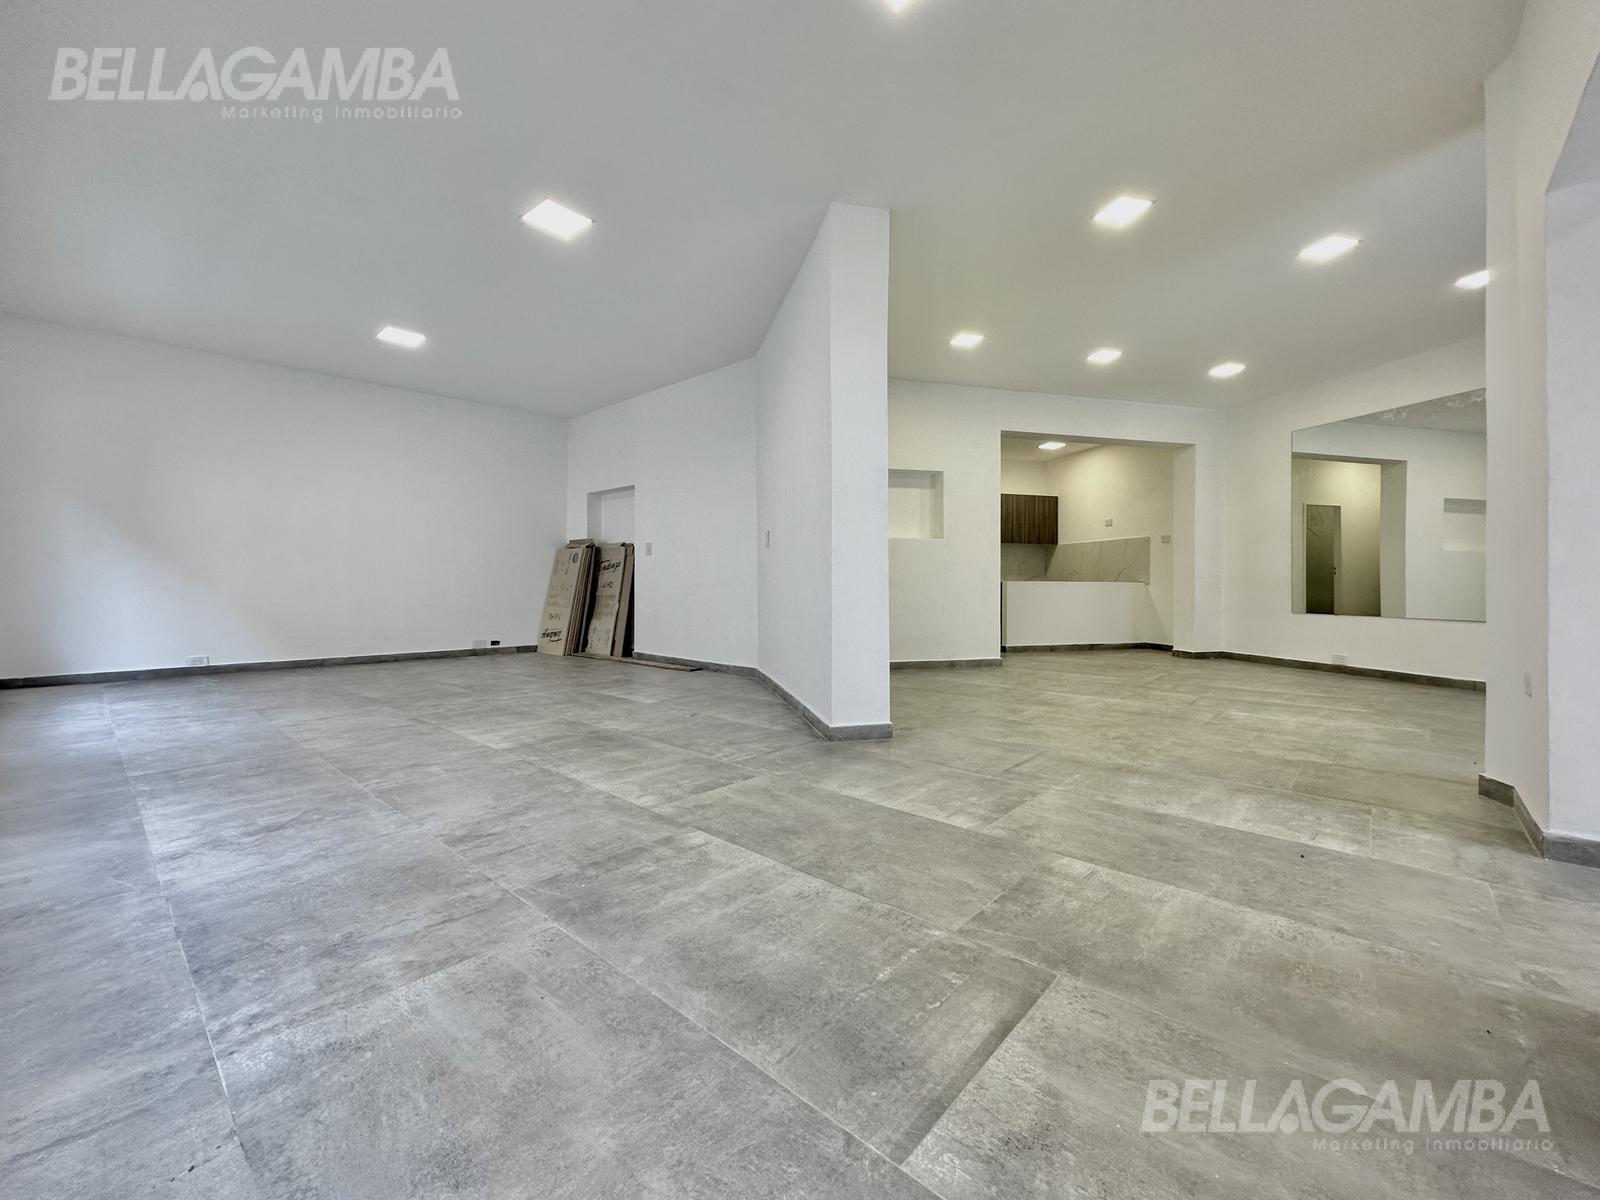 #4219564 | Venta | Local | Olivos (Bellagamba Marketing Inmobiliario)